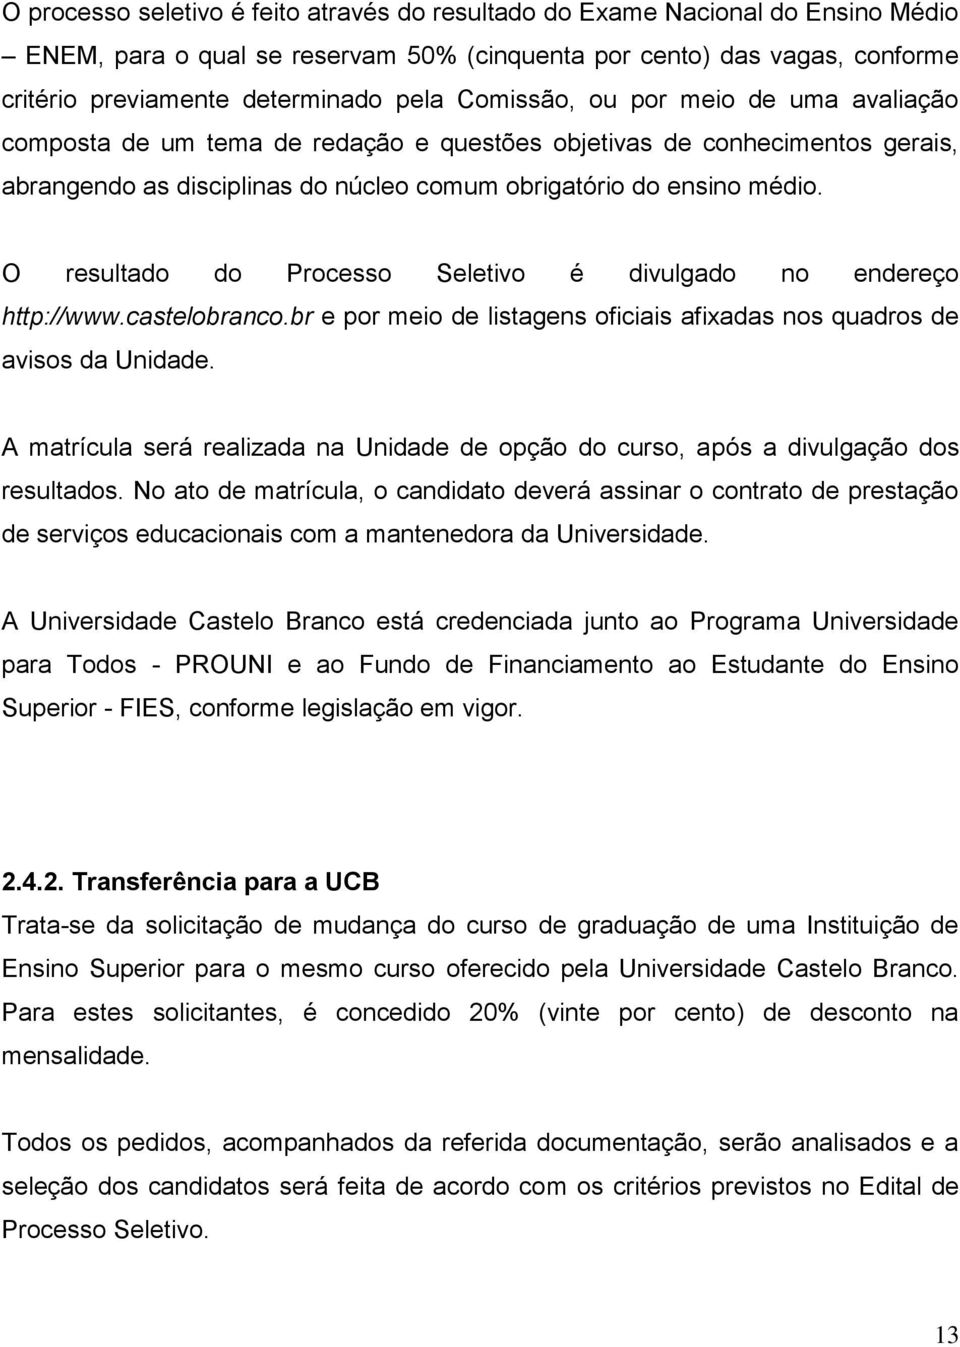 O resultado do Processo Seletivo é divulgado no endereço http://www.castelobranco.br e por meio de listagens oficiais afixadas nos quadros de avisos da Unidade.